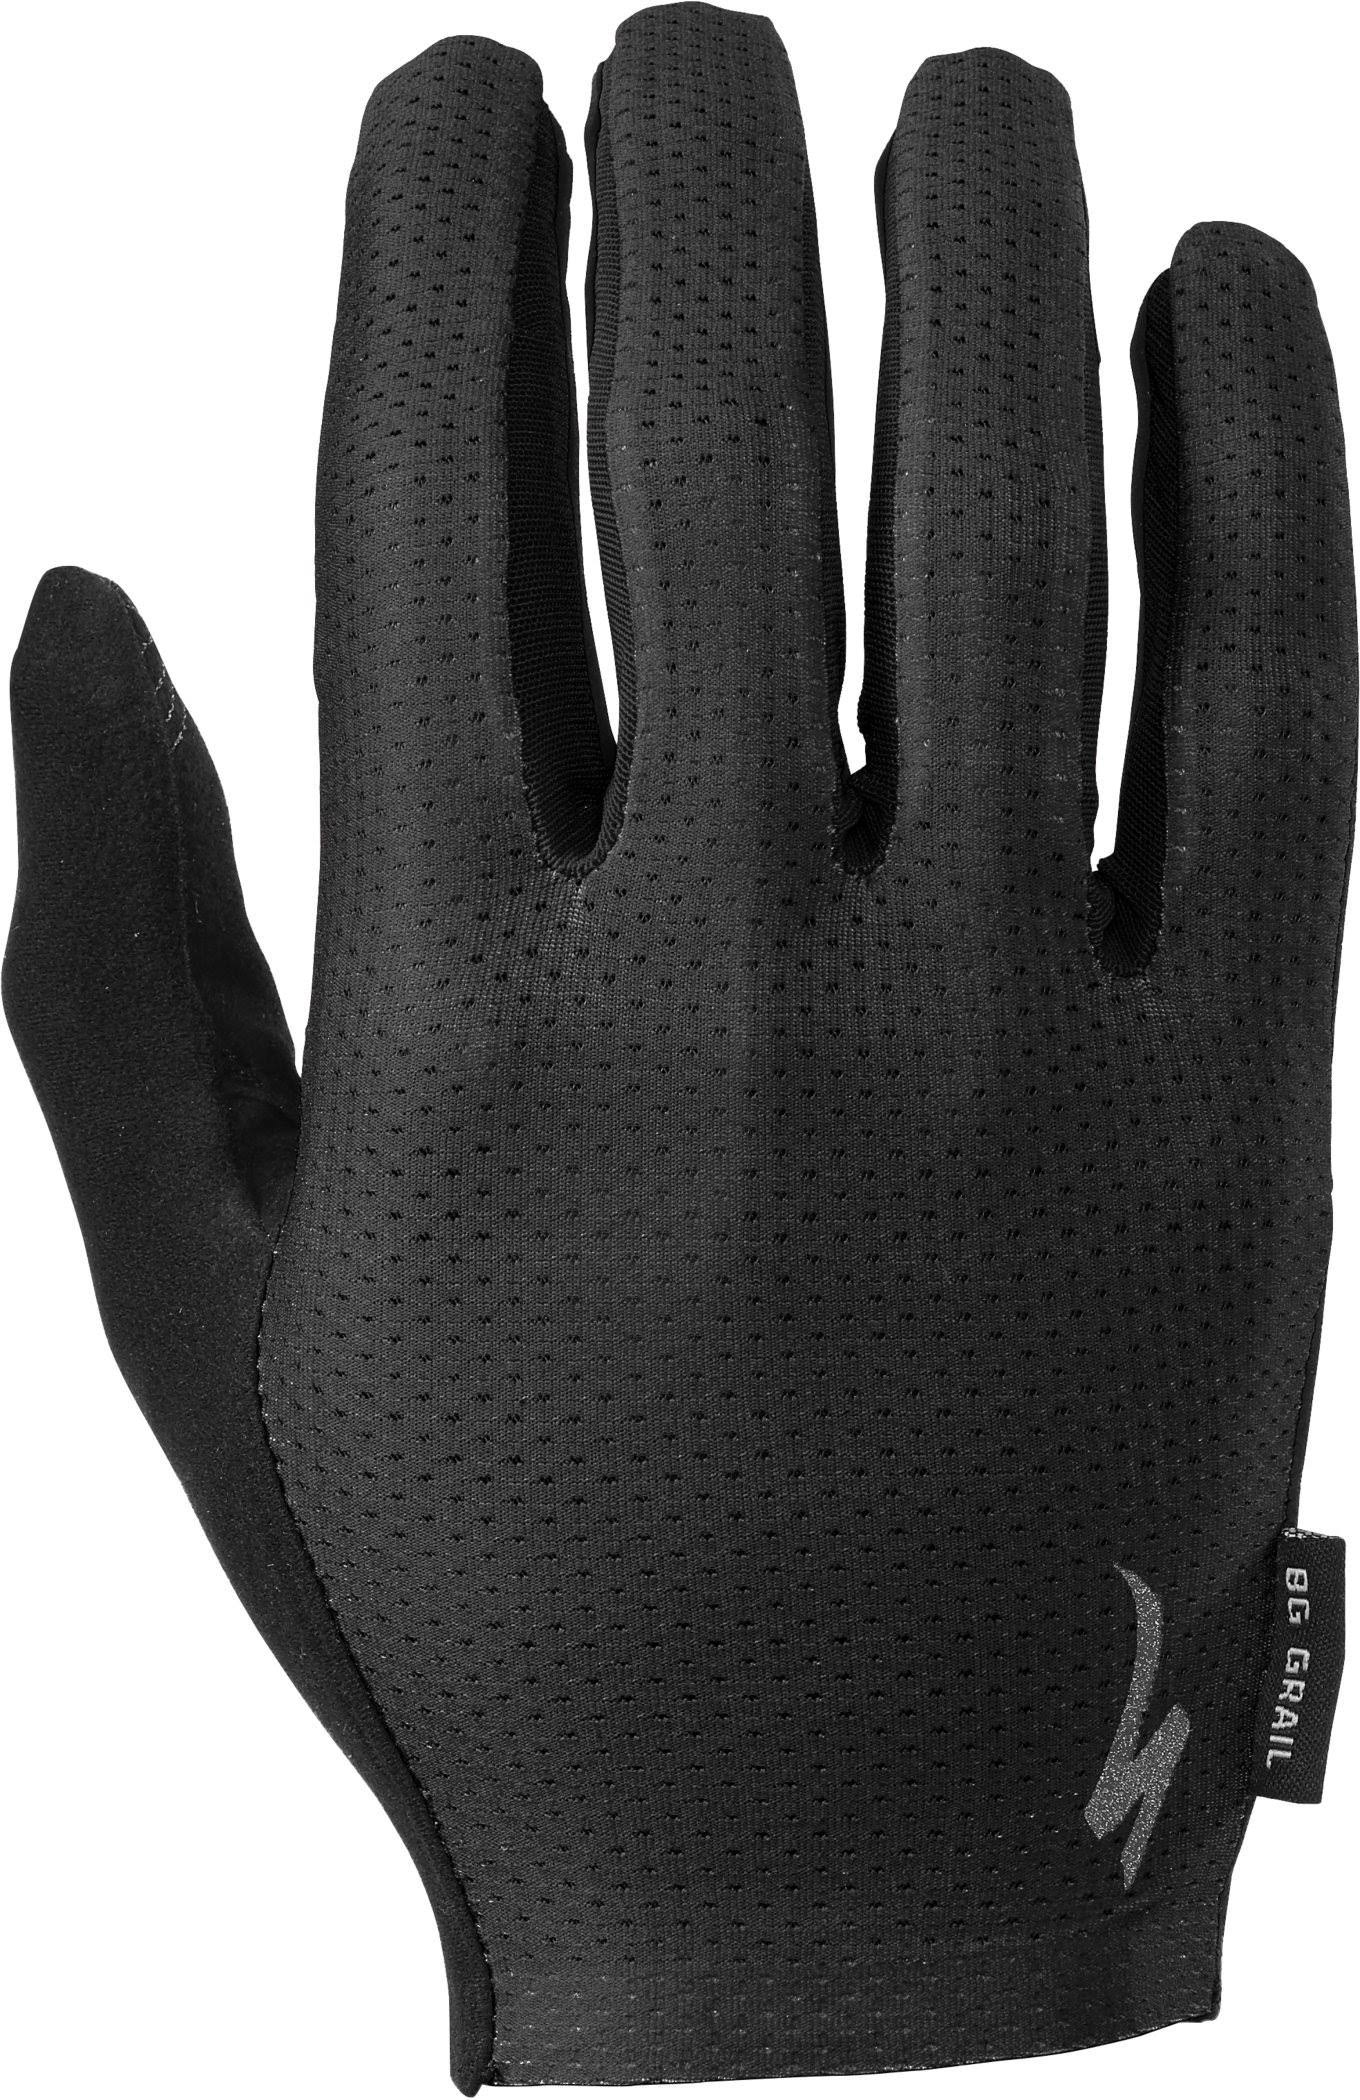 Specialized Body Geometry Grail Glove Long Finger Black / L